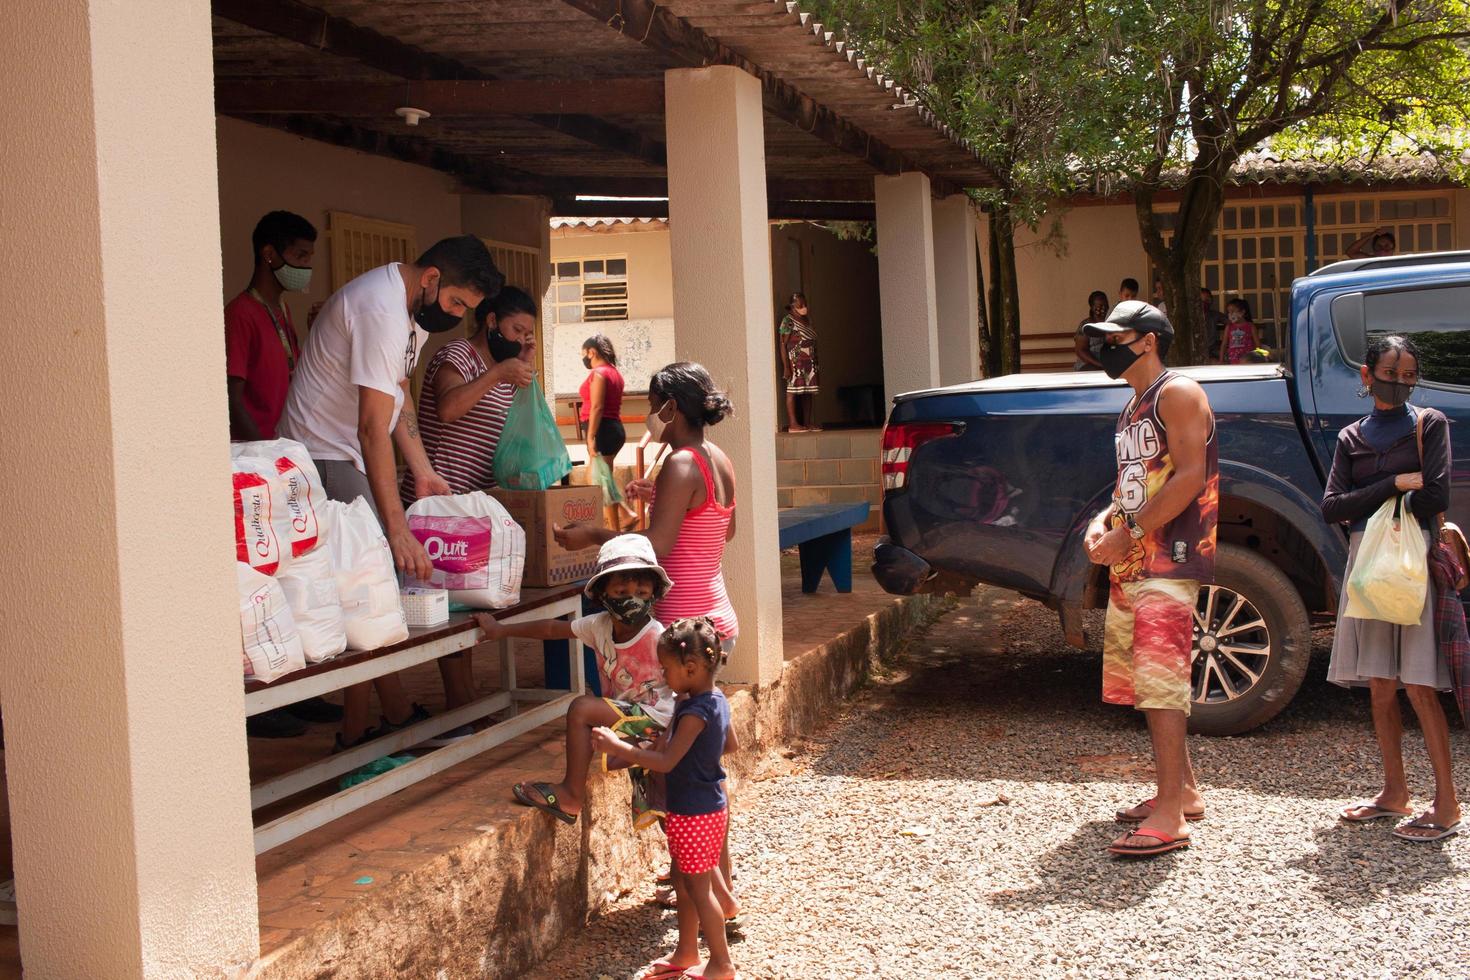 Planaltina, Brésil, 2-26-22-centre d'alimentation local distribuant de la nourriture photo